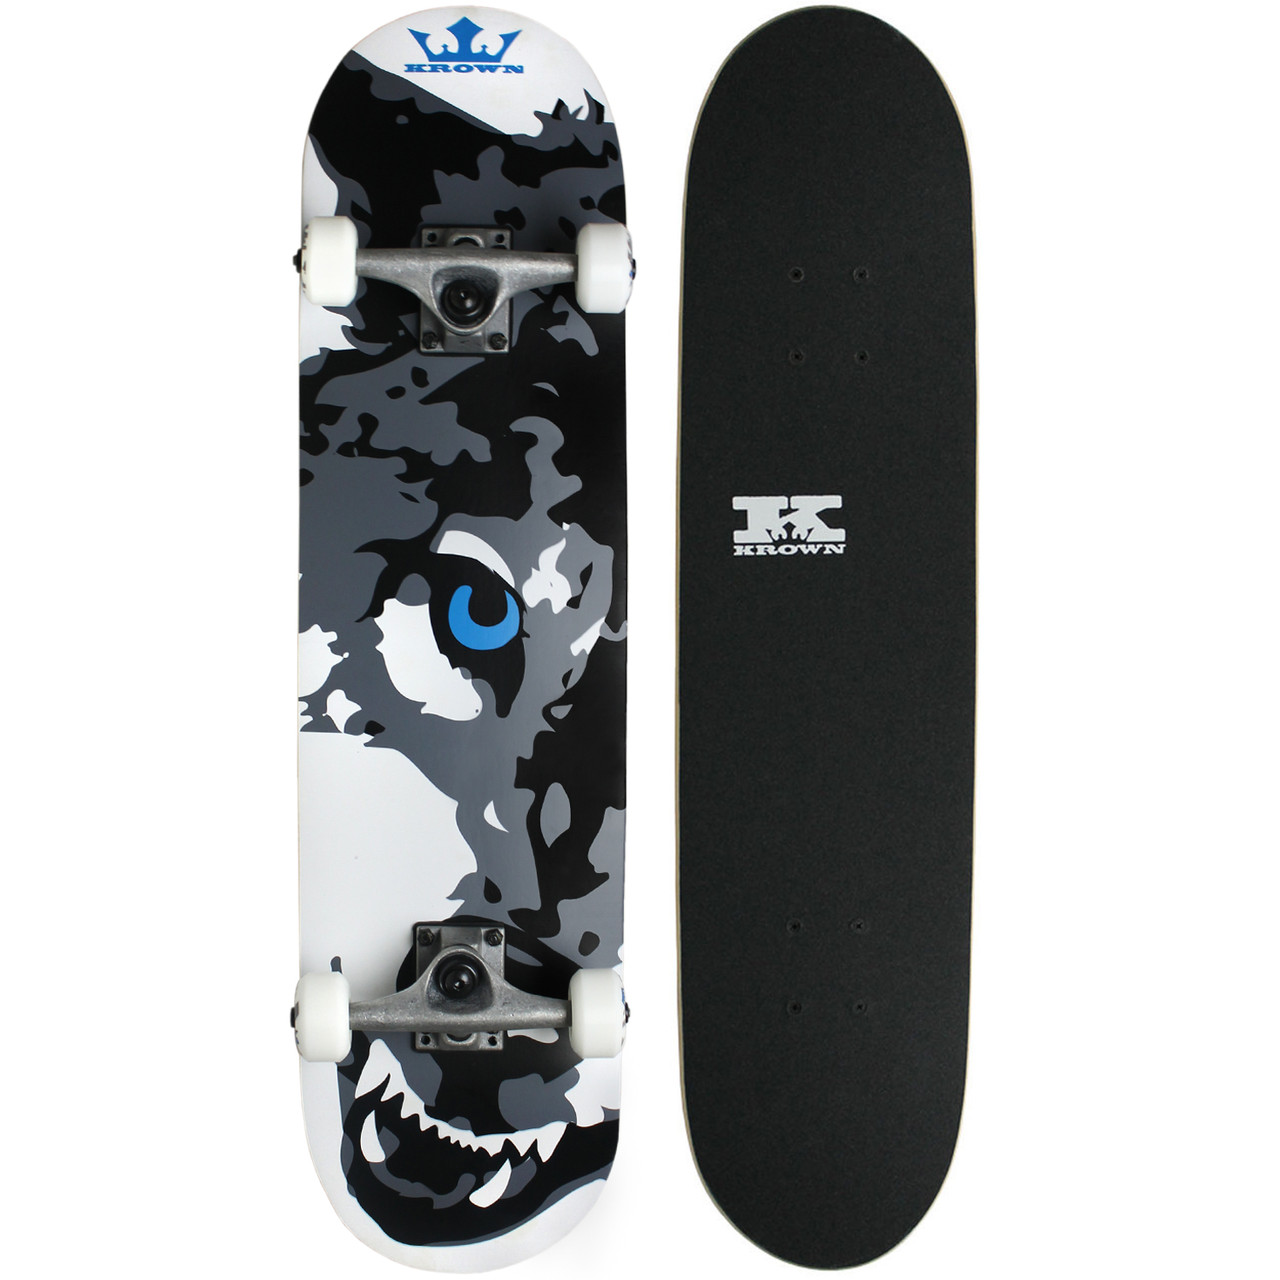 KROWN Skateboard Grim Reaper 7.5" x 31.5" 